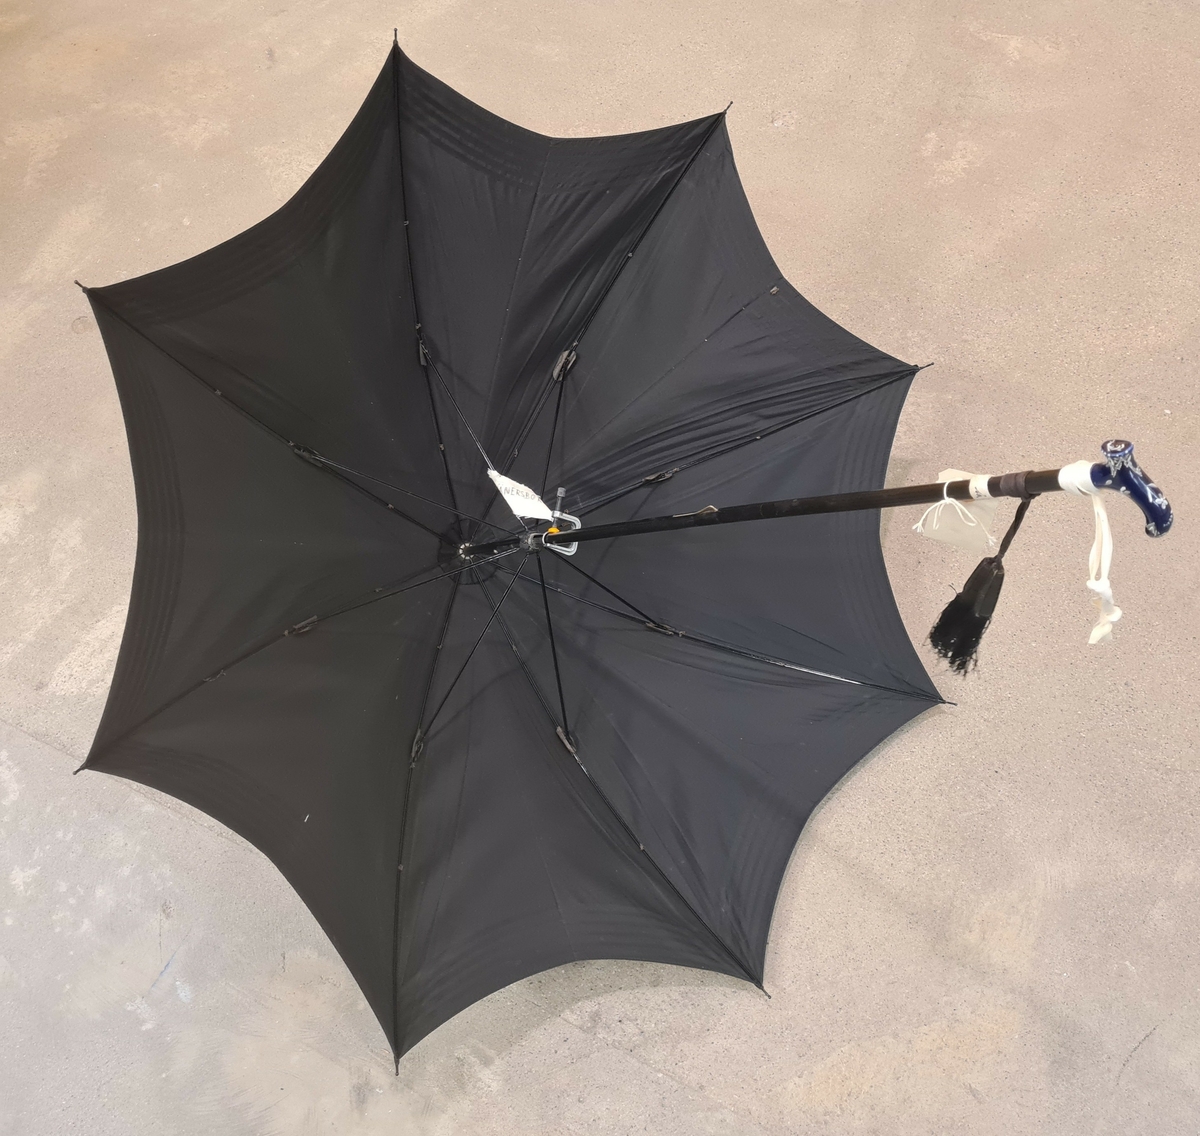 Parasoll i svart tyg. Vid skaftet hänger två tofsar.

Ingår i en samling av nio olika parasoller med olika utseende och modell.